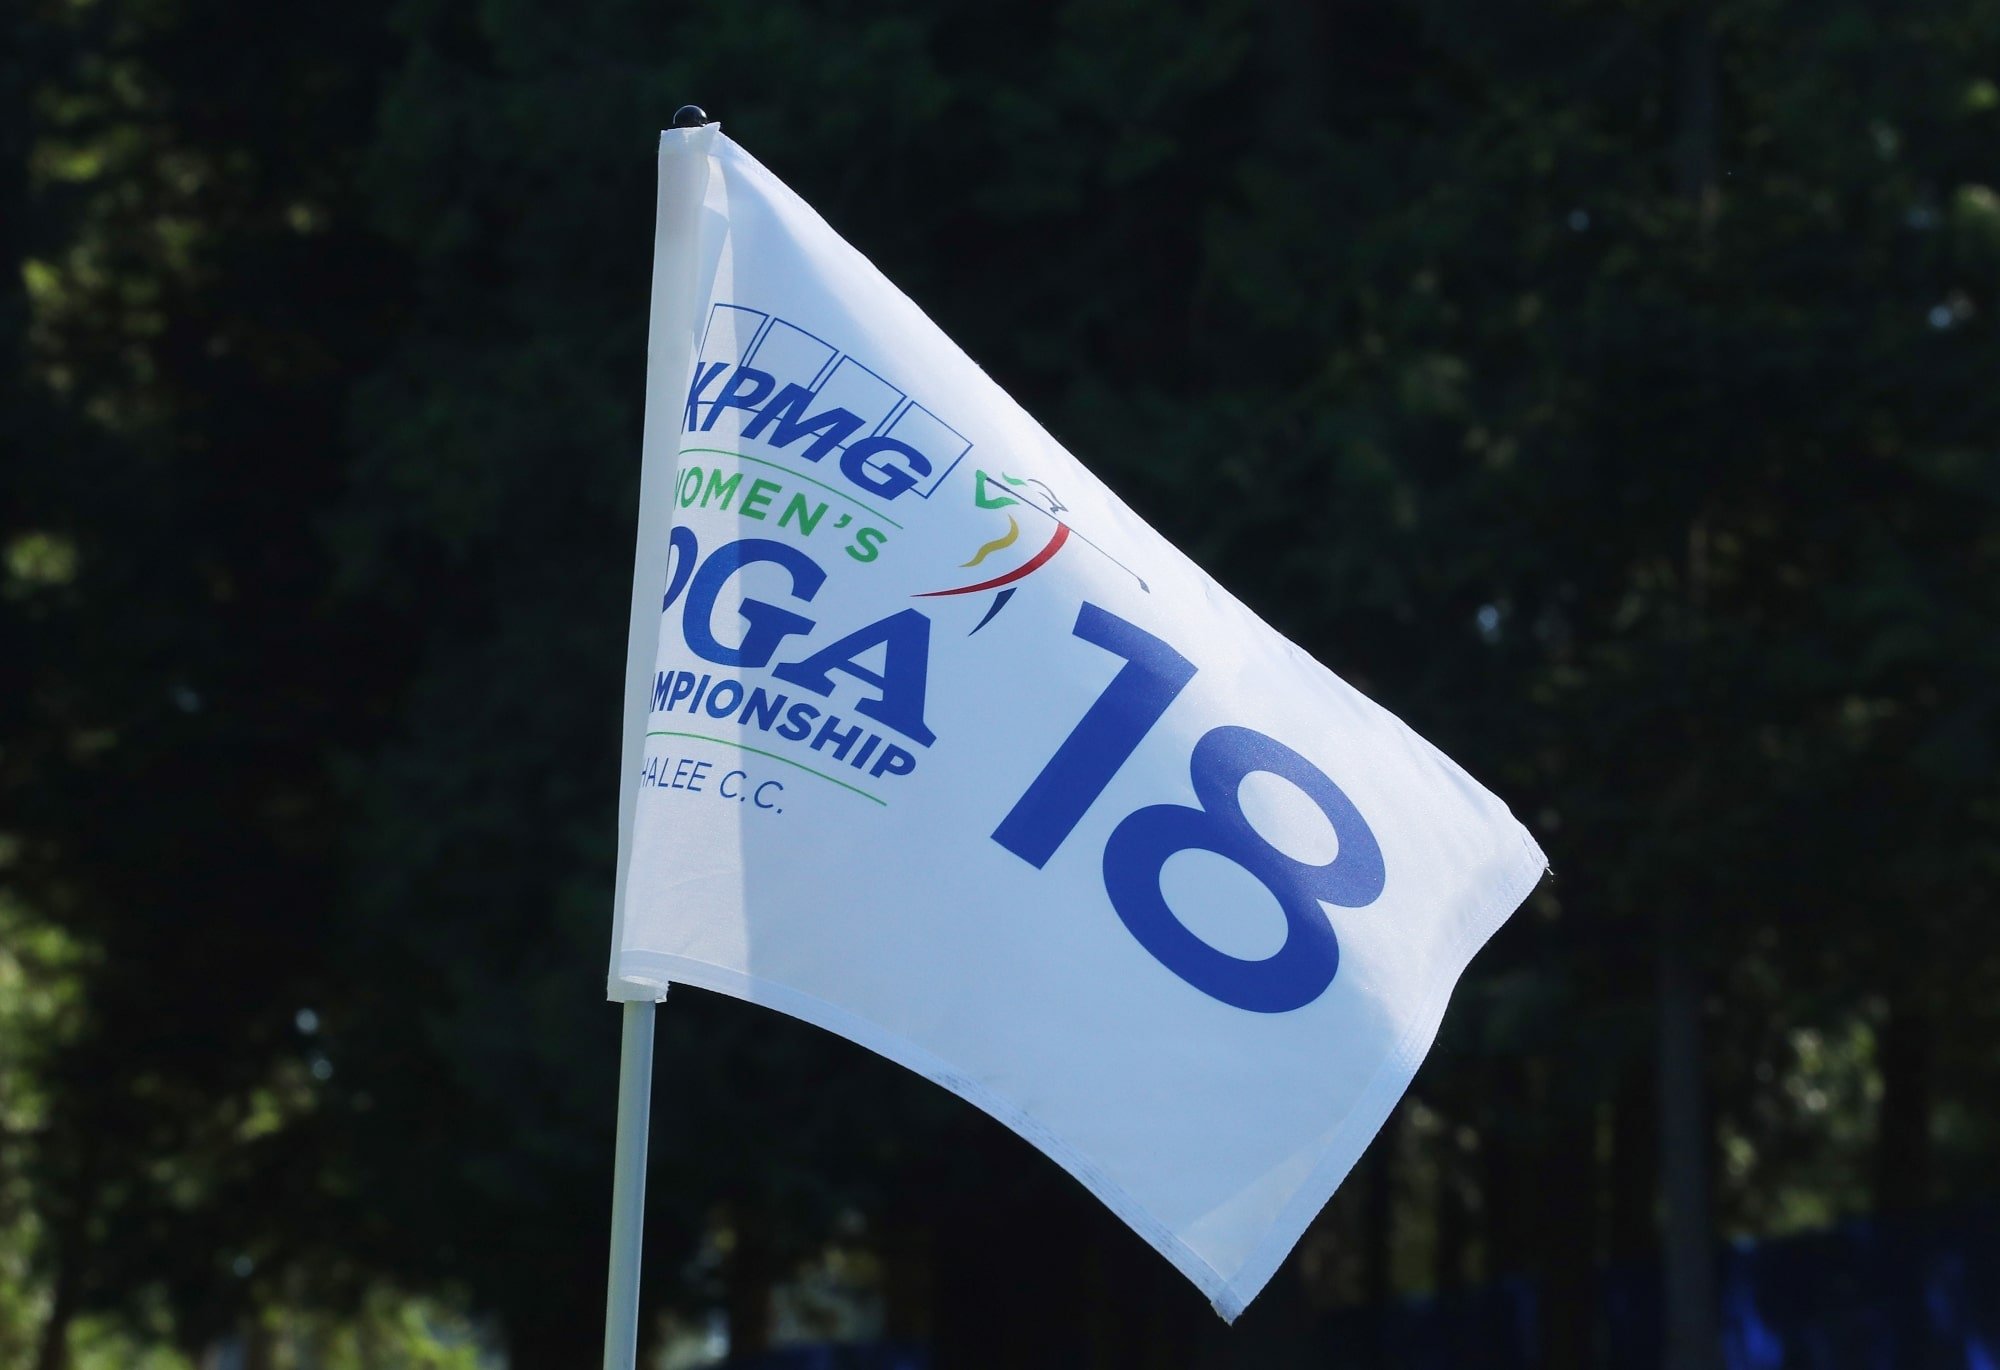 Women's PGA Championship qualify